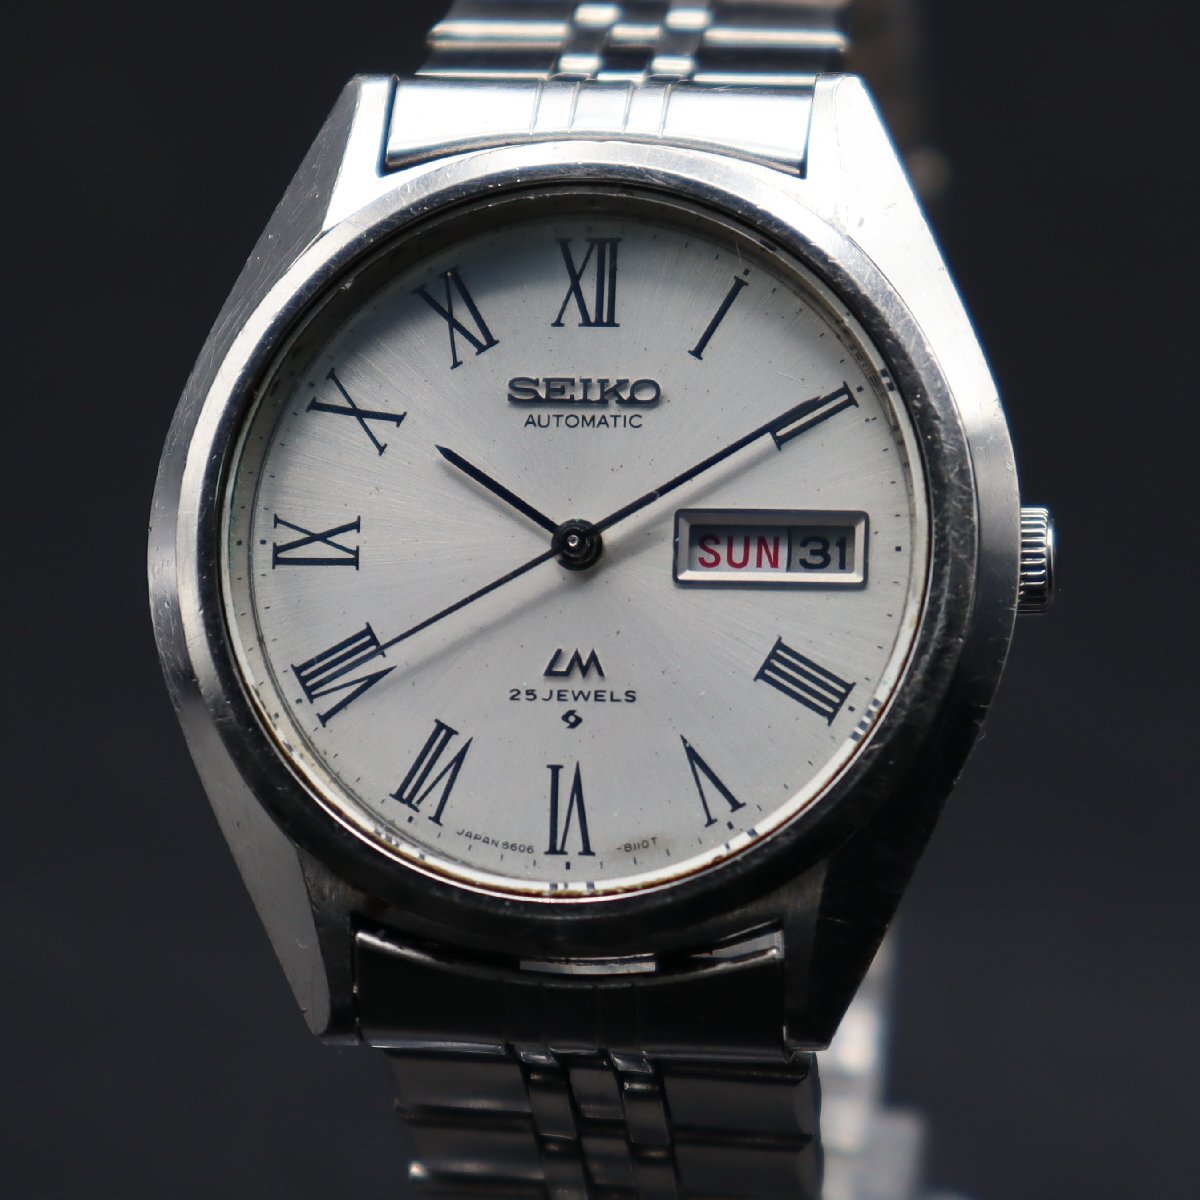 SEIKO LM セイコー ロードマチック 自動巻き 25石 5606-8030 1974年 ローマンインデックス 諏訪 日/英デイデイト 純正ブレス メンズ腕時計の画像3